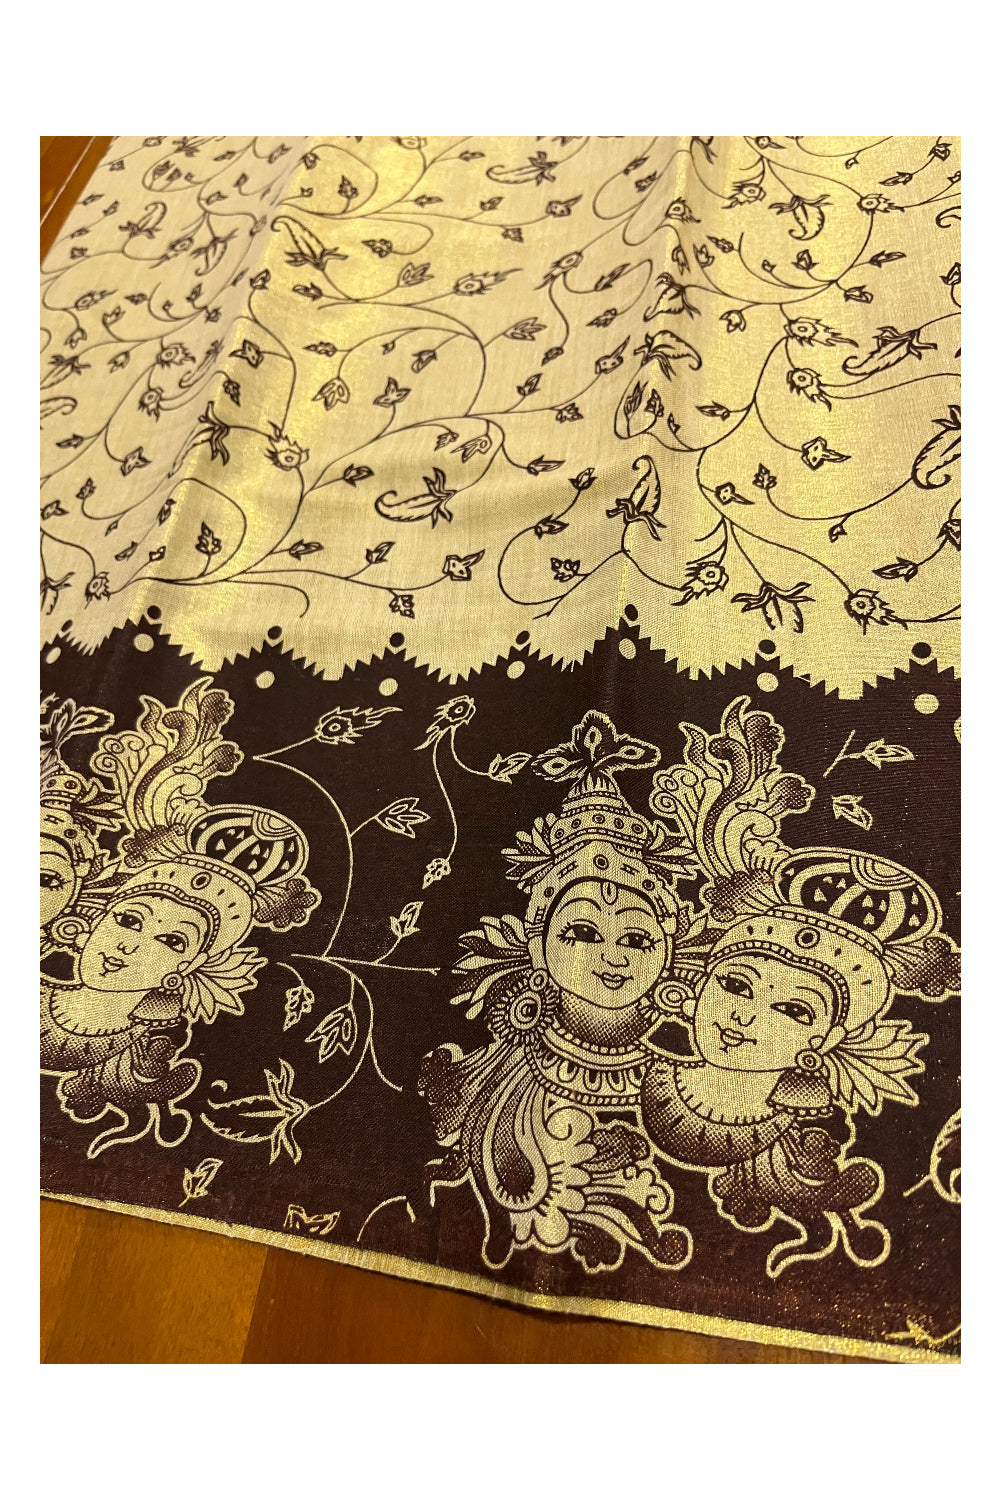 Kerala Tissue Block Printed Pavada and Dark Brown Designer Blouse Material for Kids 3 Meters